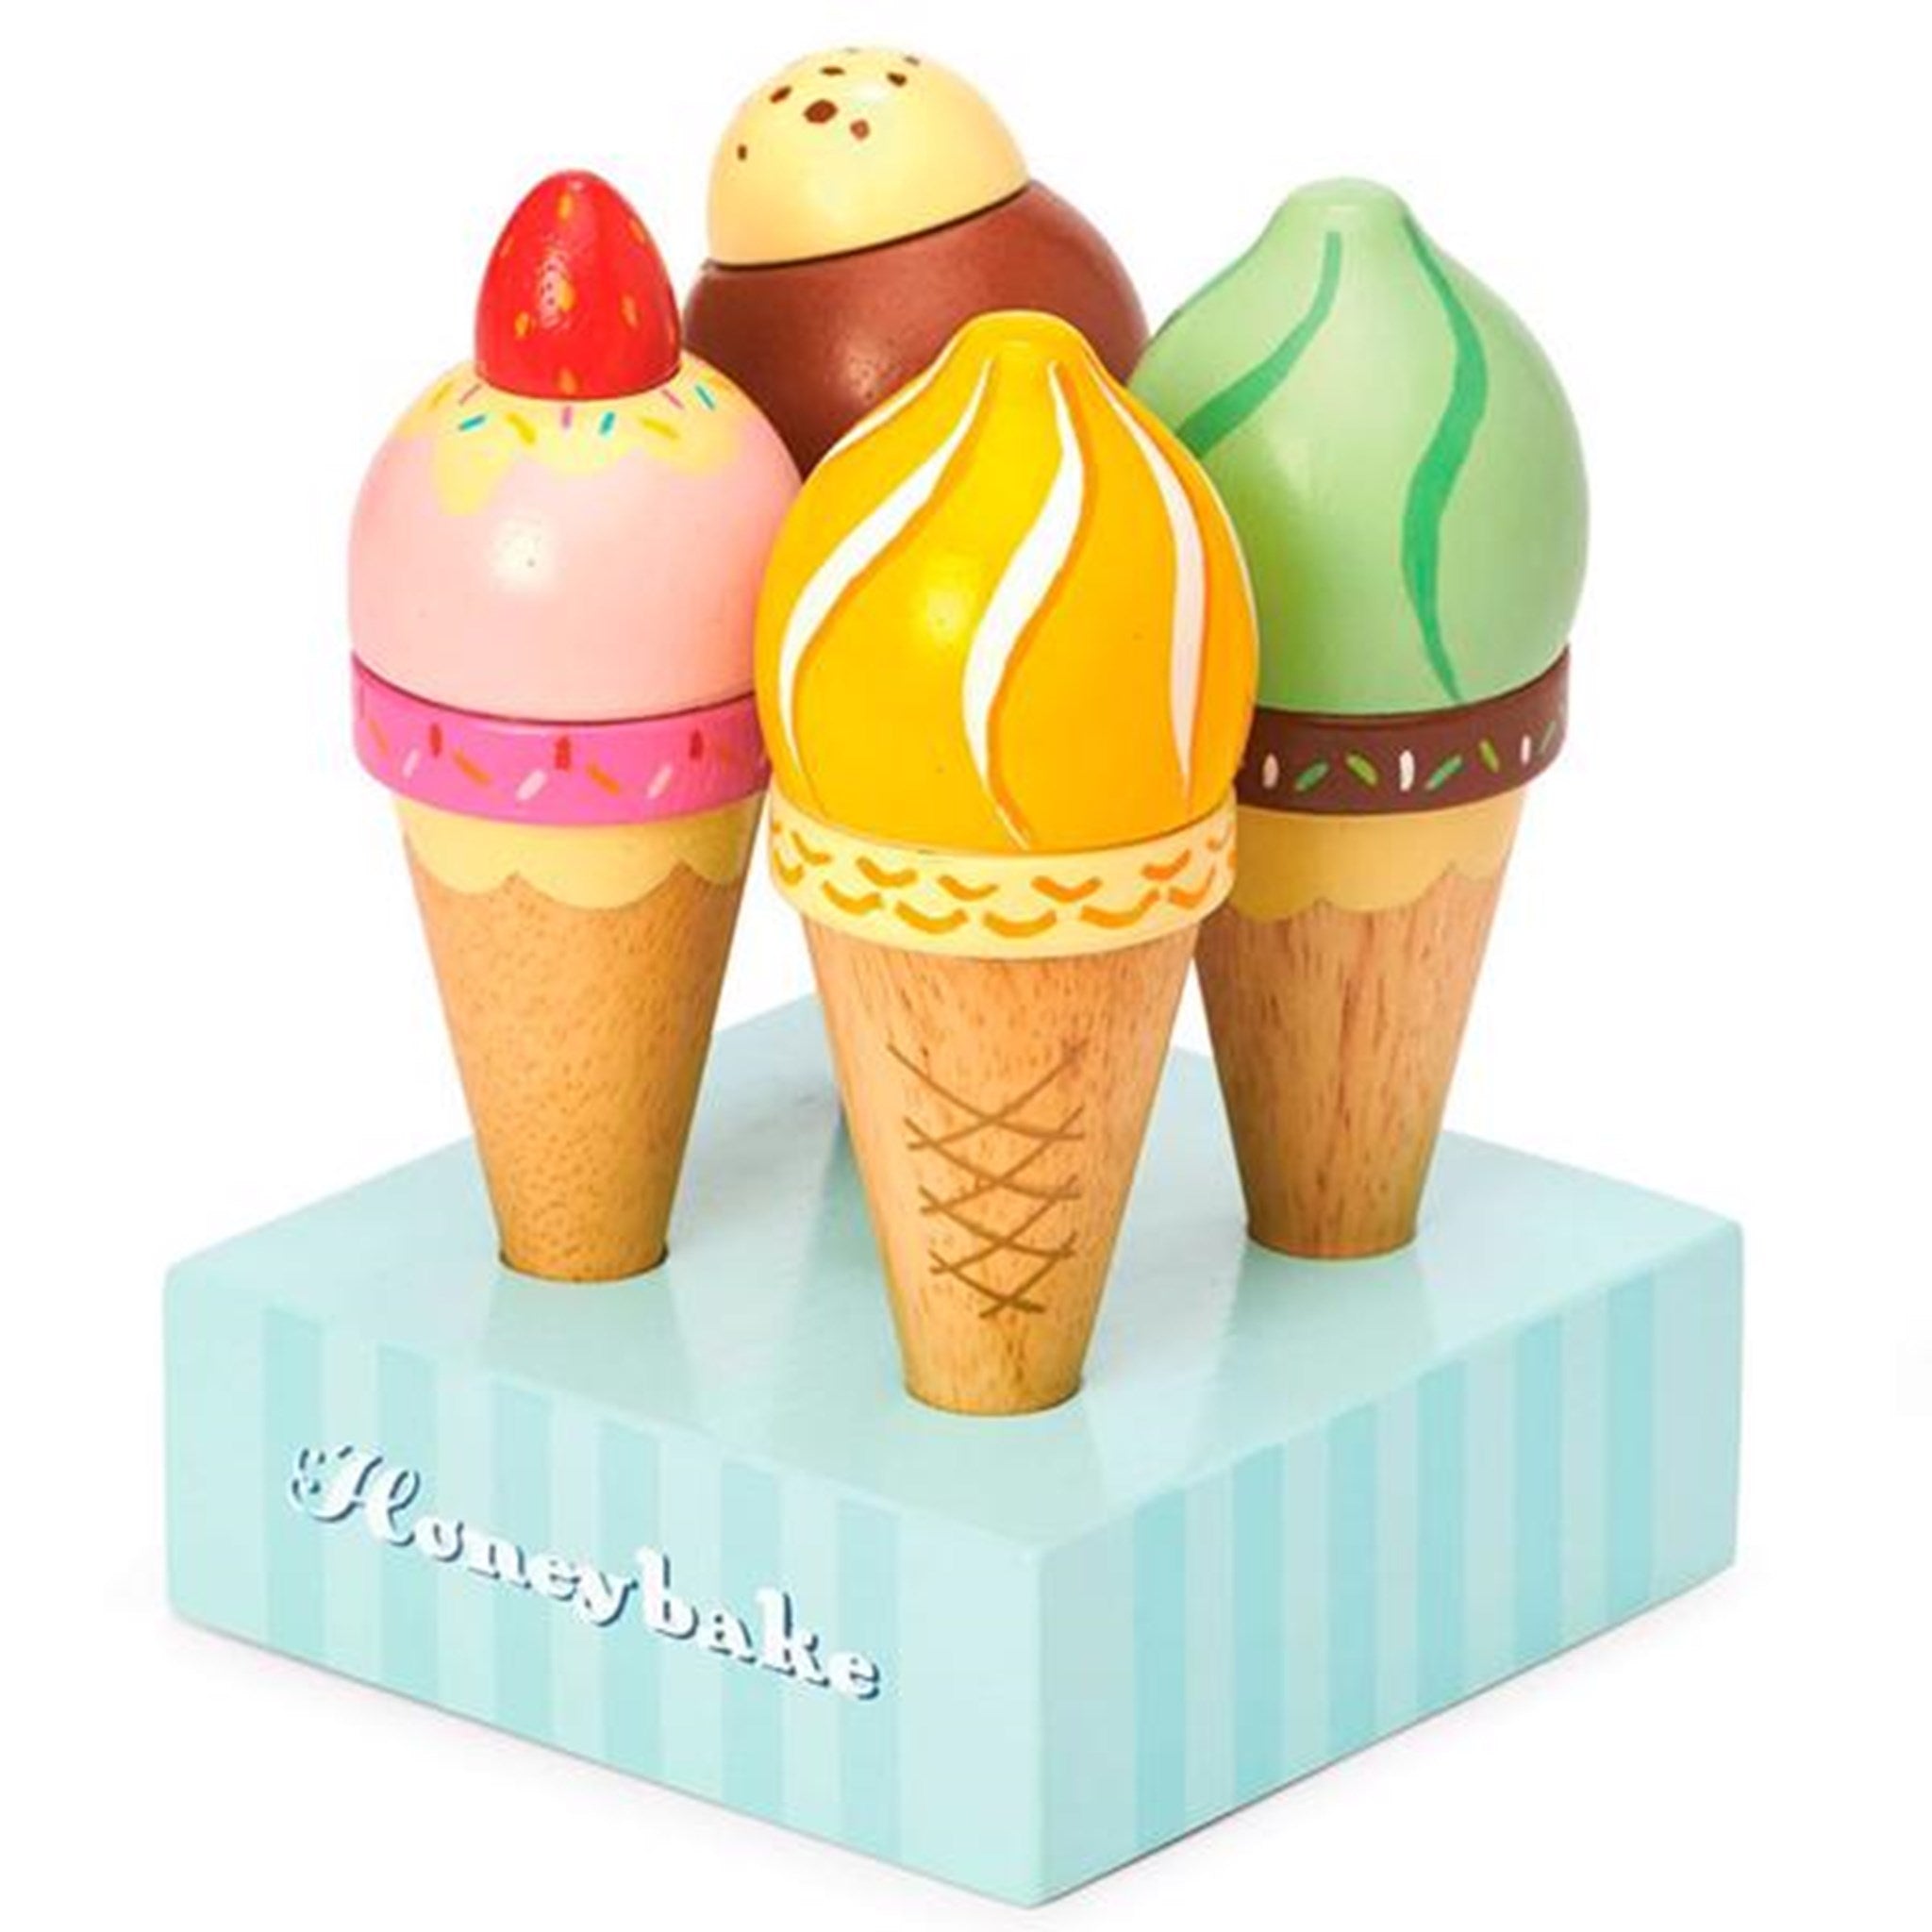 Le Toy Van Honeybake Ice Cream Cones